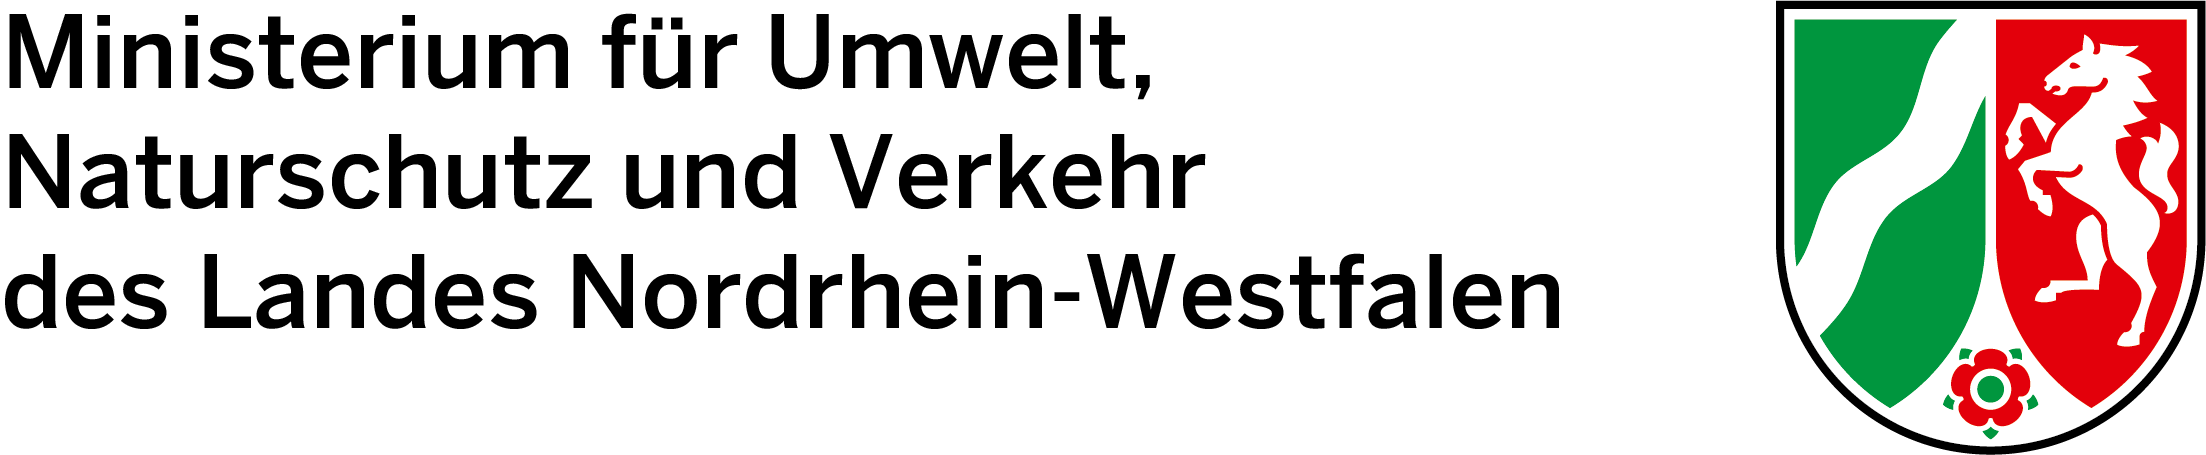 Logo: Logo des Ministeriums für Umwelt, Naturschutz und Verkehr des Landes Nordrhein-Westfalen